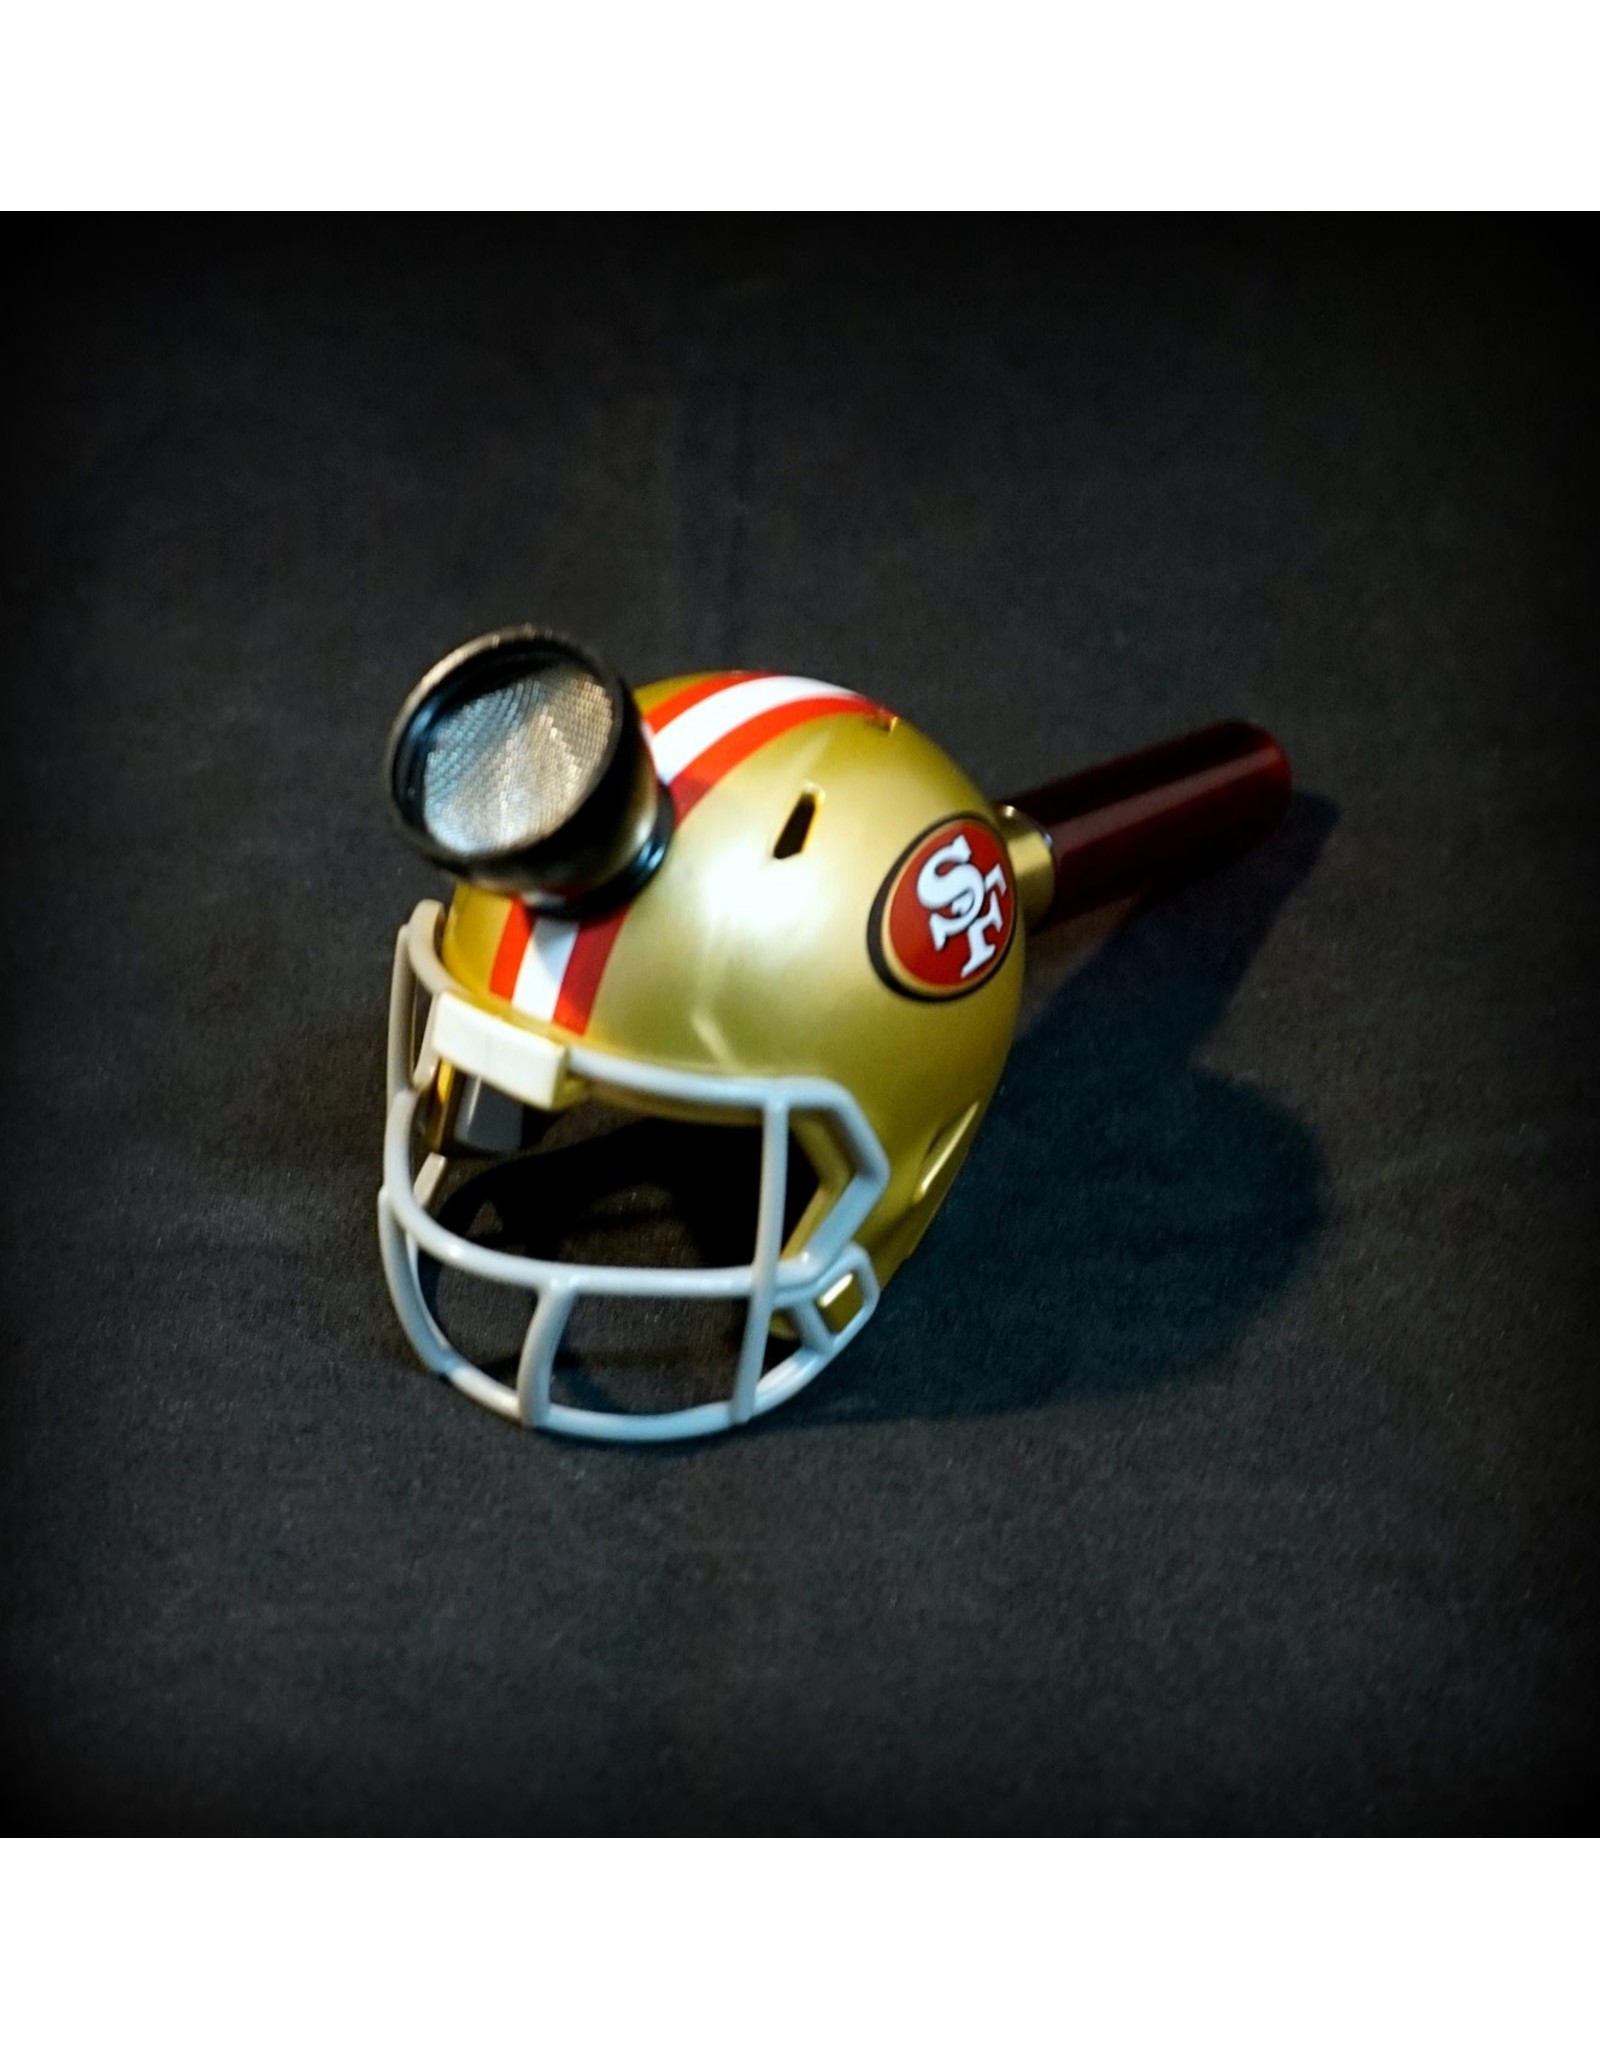 NFL Metal Handpipe ÃƒÆ’Ã‚Â¢ÃƒÂ¢Ã¢â‚¬Å¡Ã‚Â¬ÃƒÂ¢Ã¢â€šÂ¬Ã…â€œ San Francisco 49ers